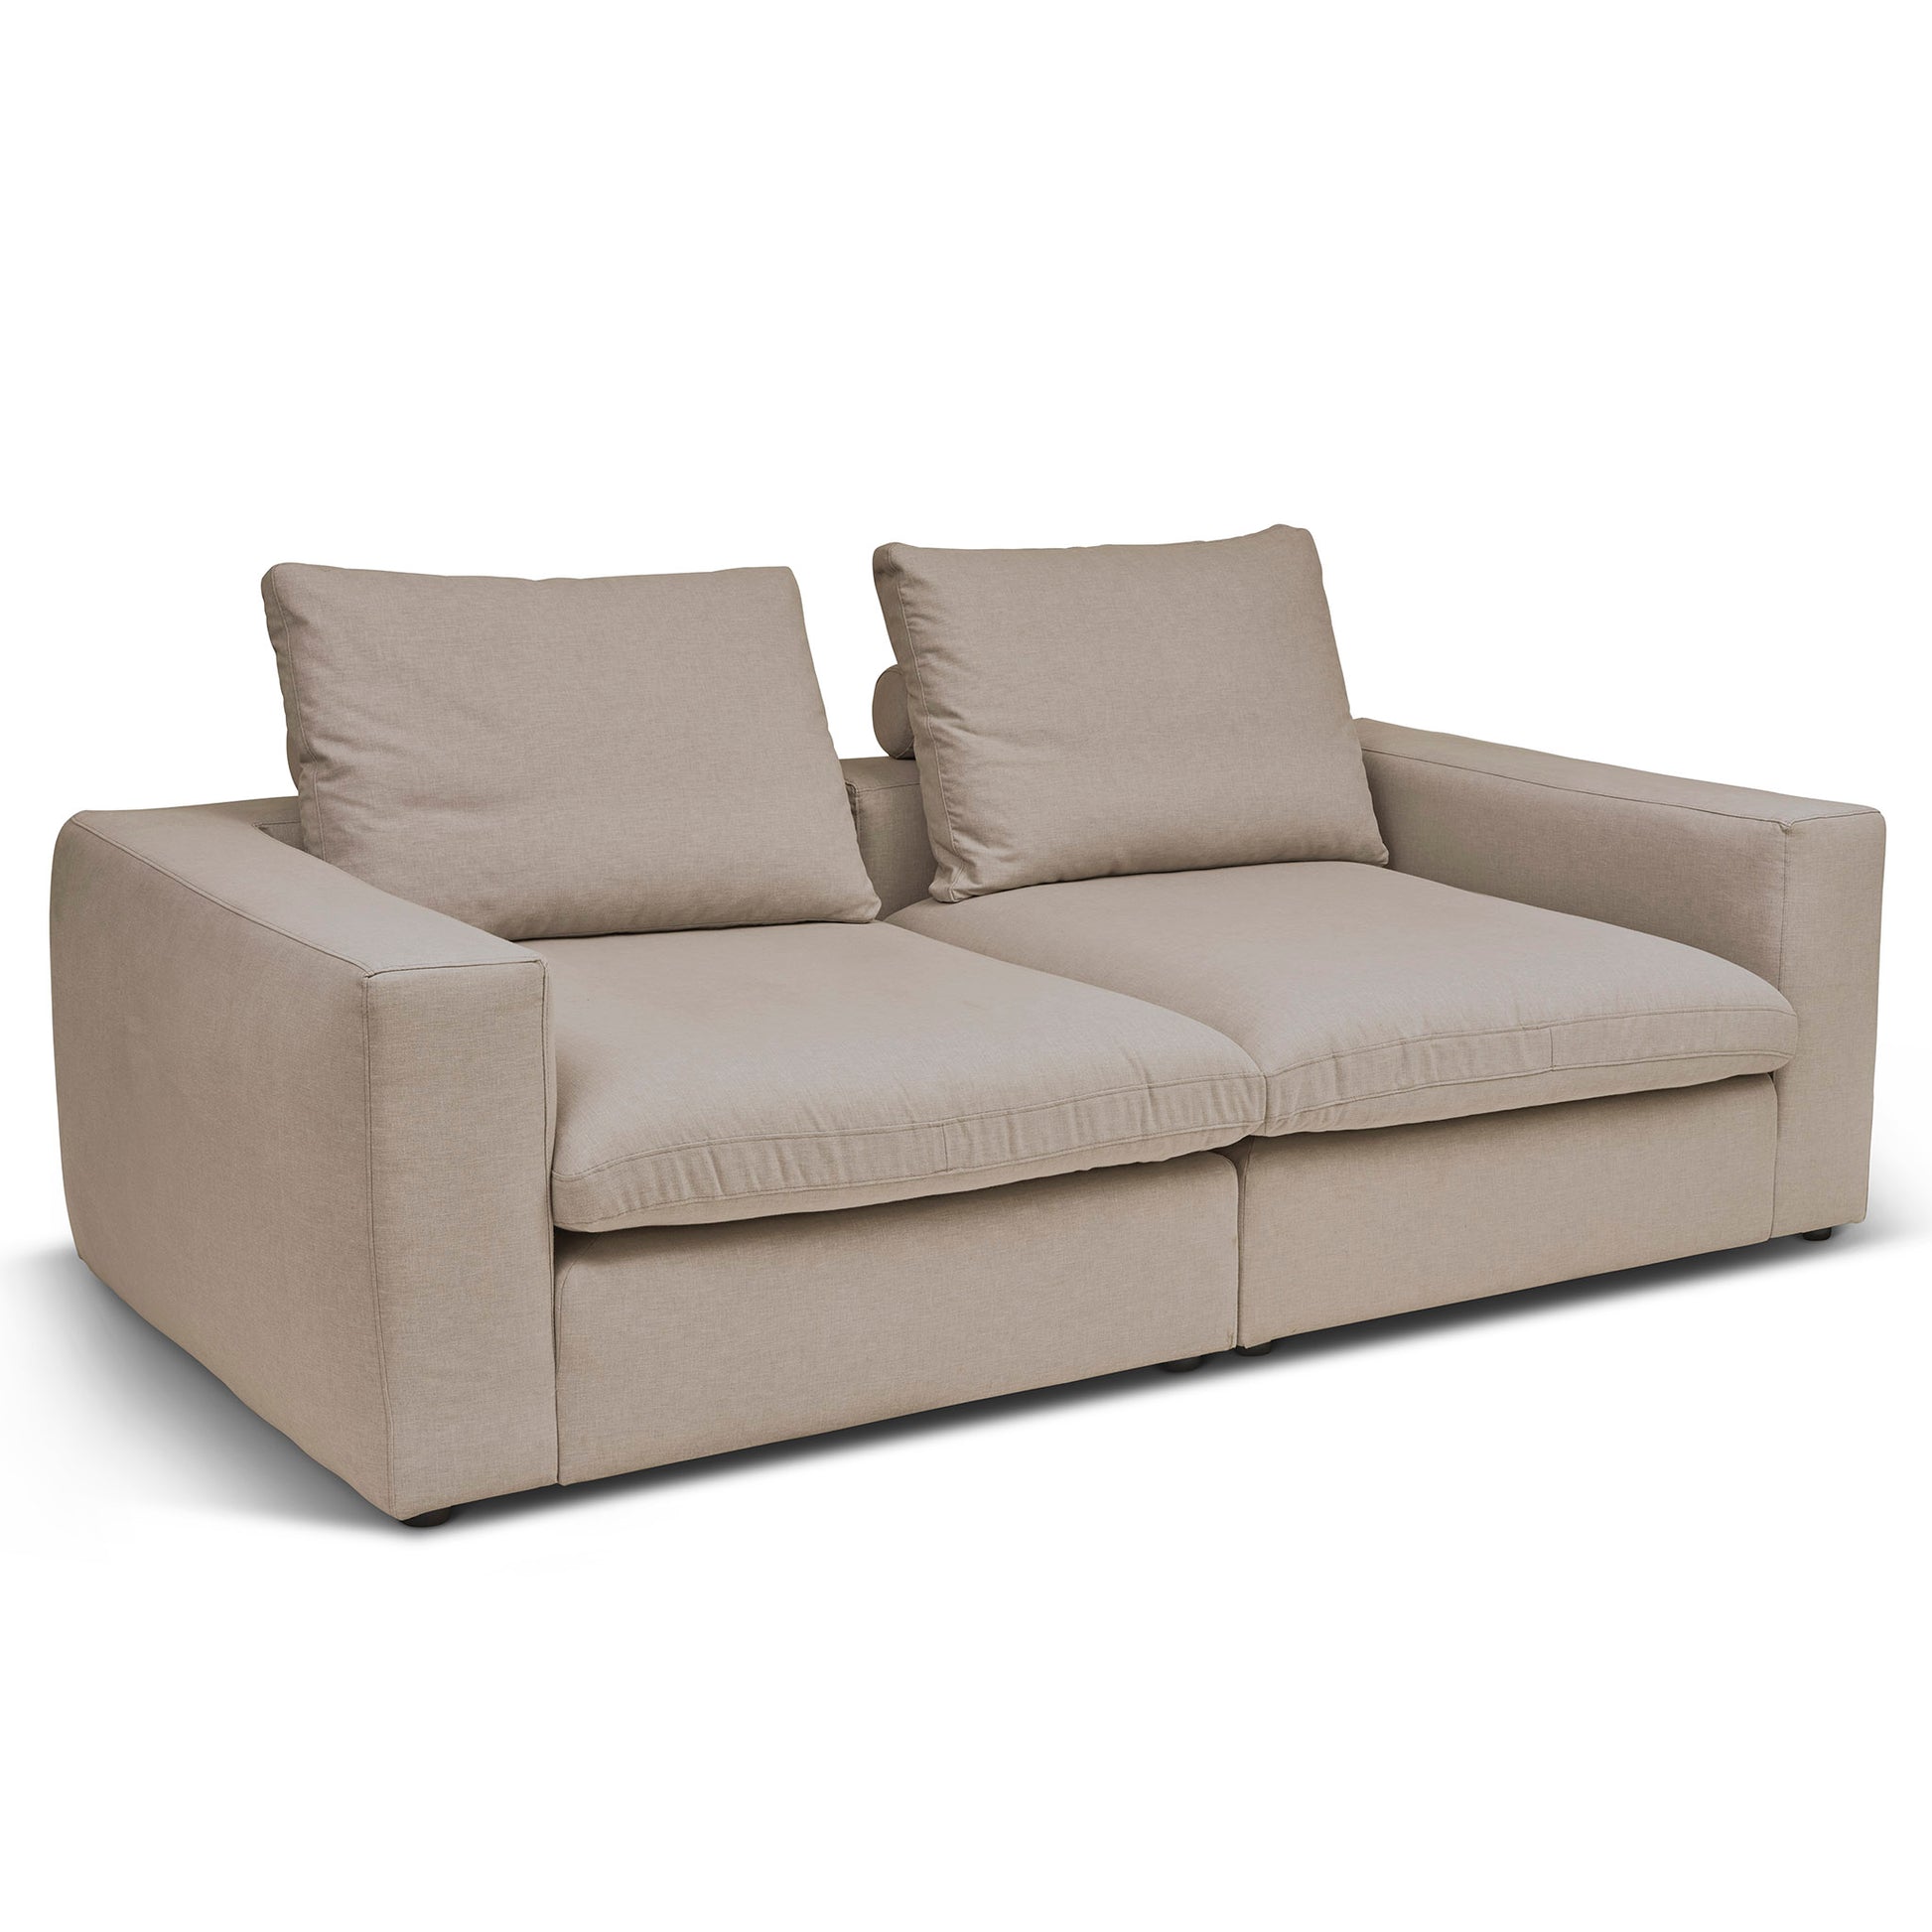 Extra djup 3-sits soffa i beigegrå färg. Palazzo är en byggbar modulsoffa